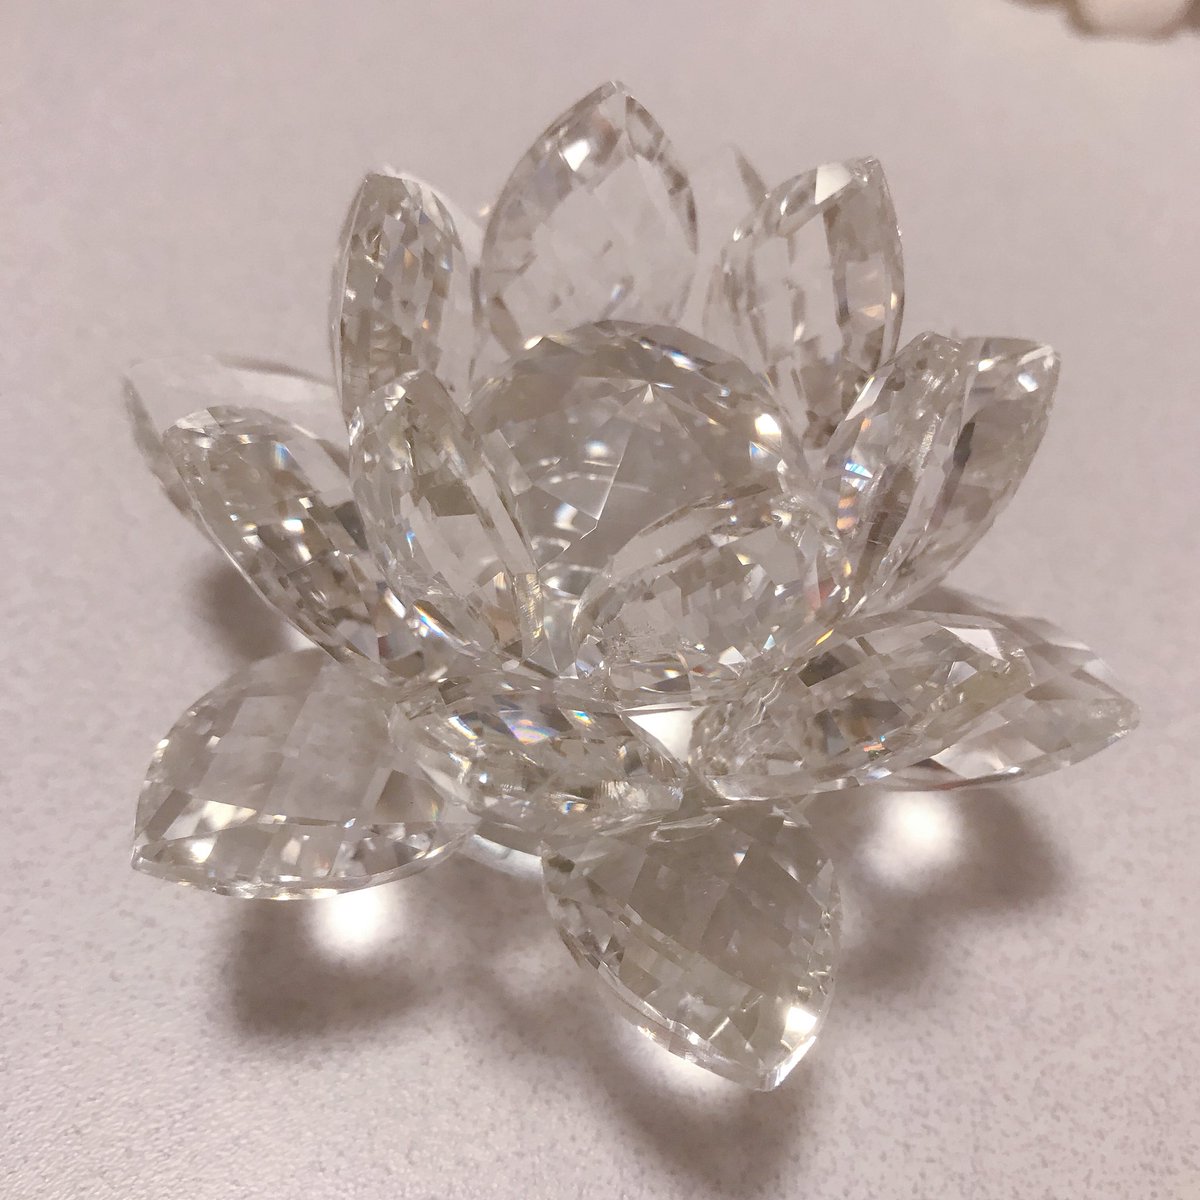 ほびィ 買えました 幻の銀水晶ペーパーウェイト 美しすぎて涙が出ました ずっと銀水晶モチーフのものが欲しいと思ってたけど これがベストです どこに置いても美しい 大切にしよう セーラームーンストア 銀水晶